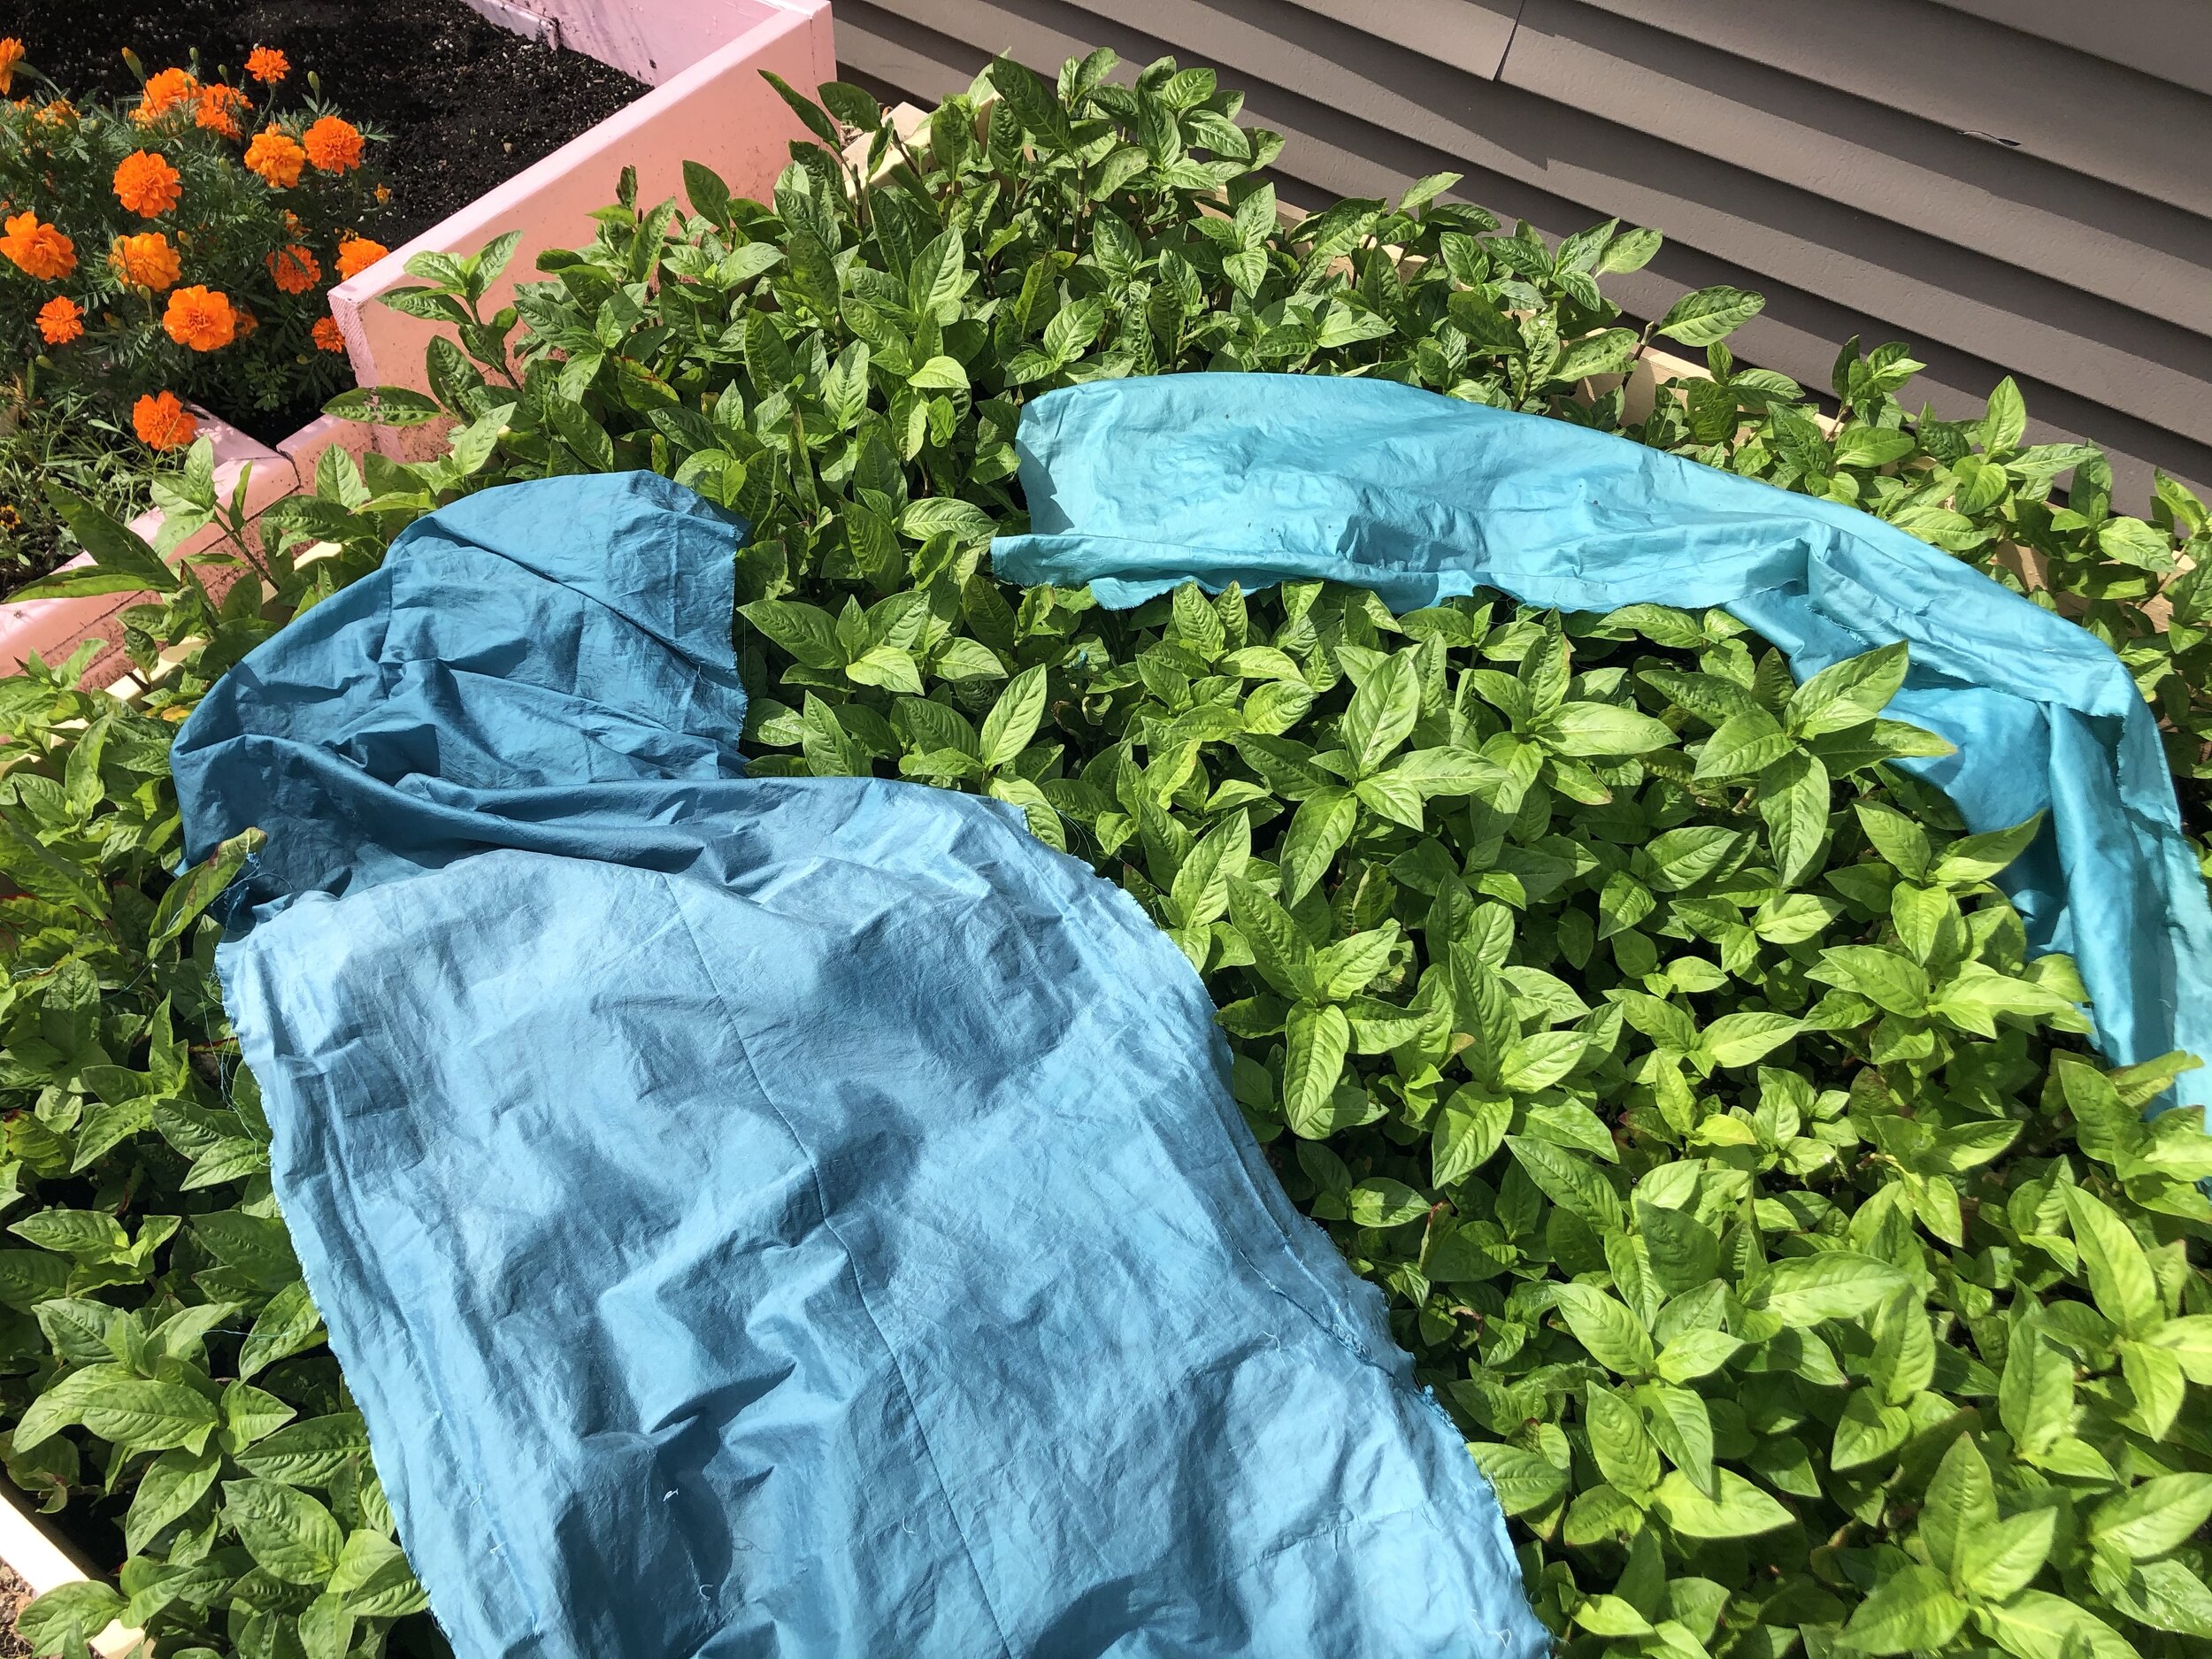  Silk dyed with fresh leaf indigo, drying on Japanese indigo plants, 2020 